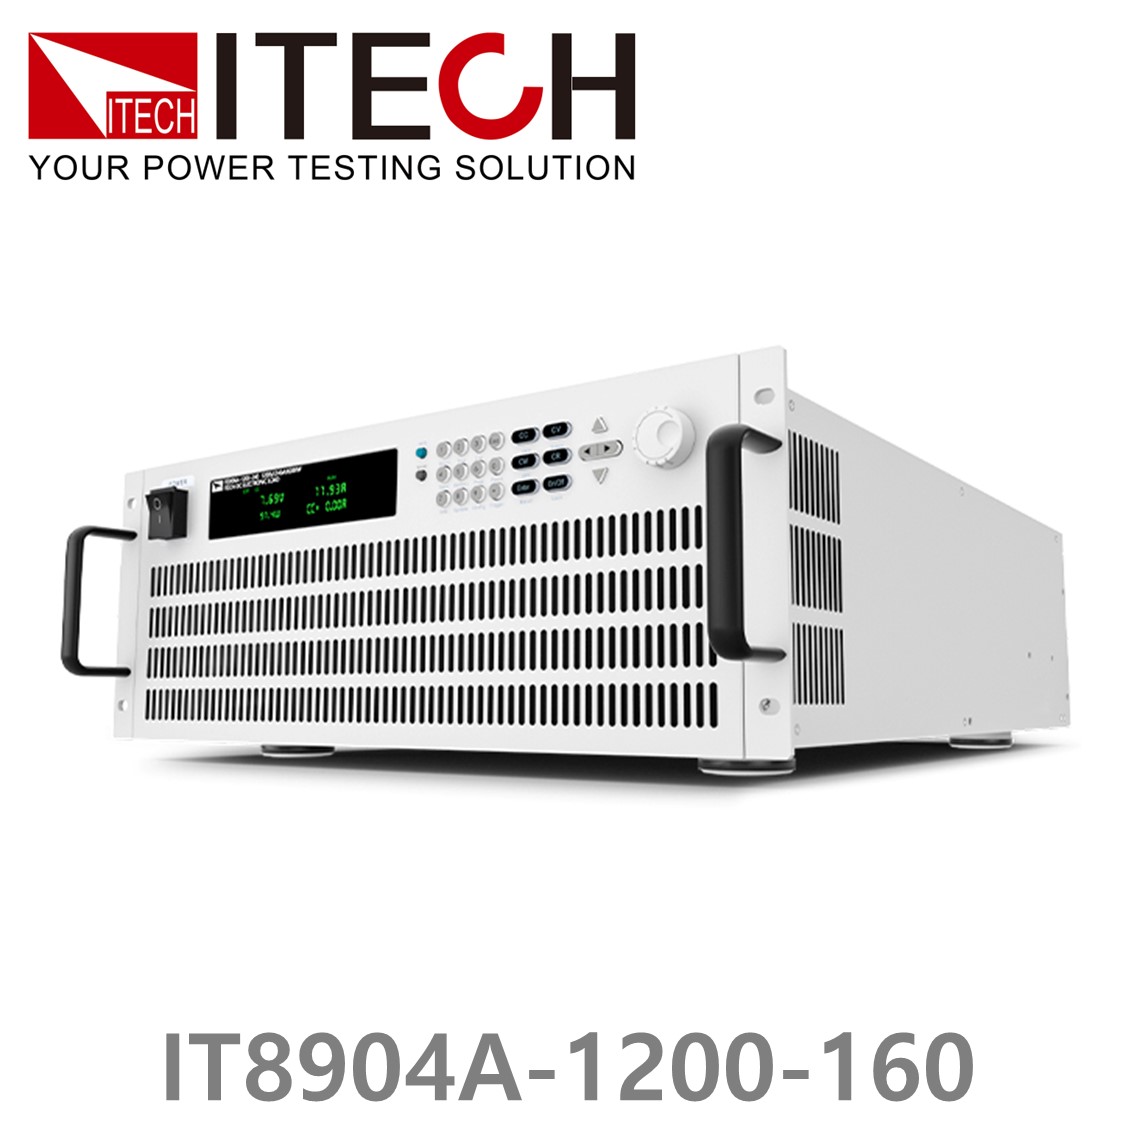 [ ITECH ] IT8904A-1200-160  고성능 고전력 DC 전자로드 1200V/160A/4kW (4U)